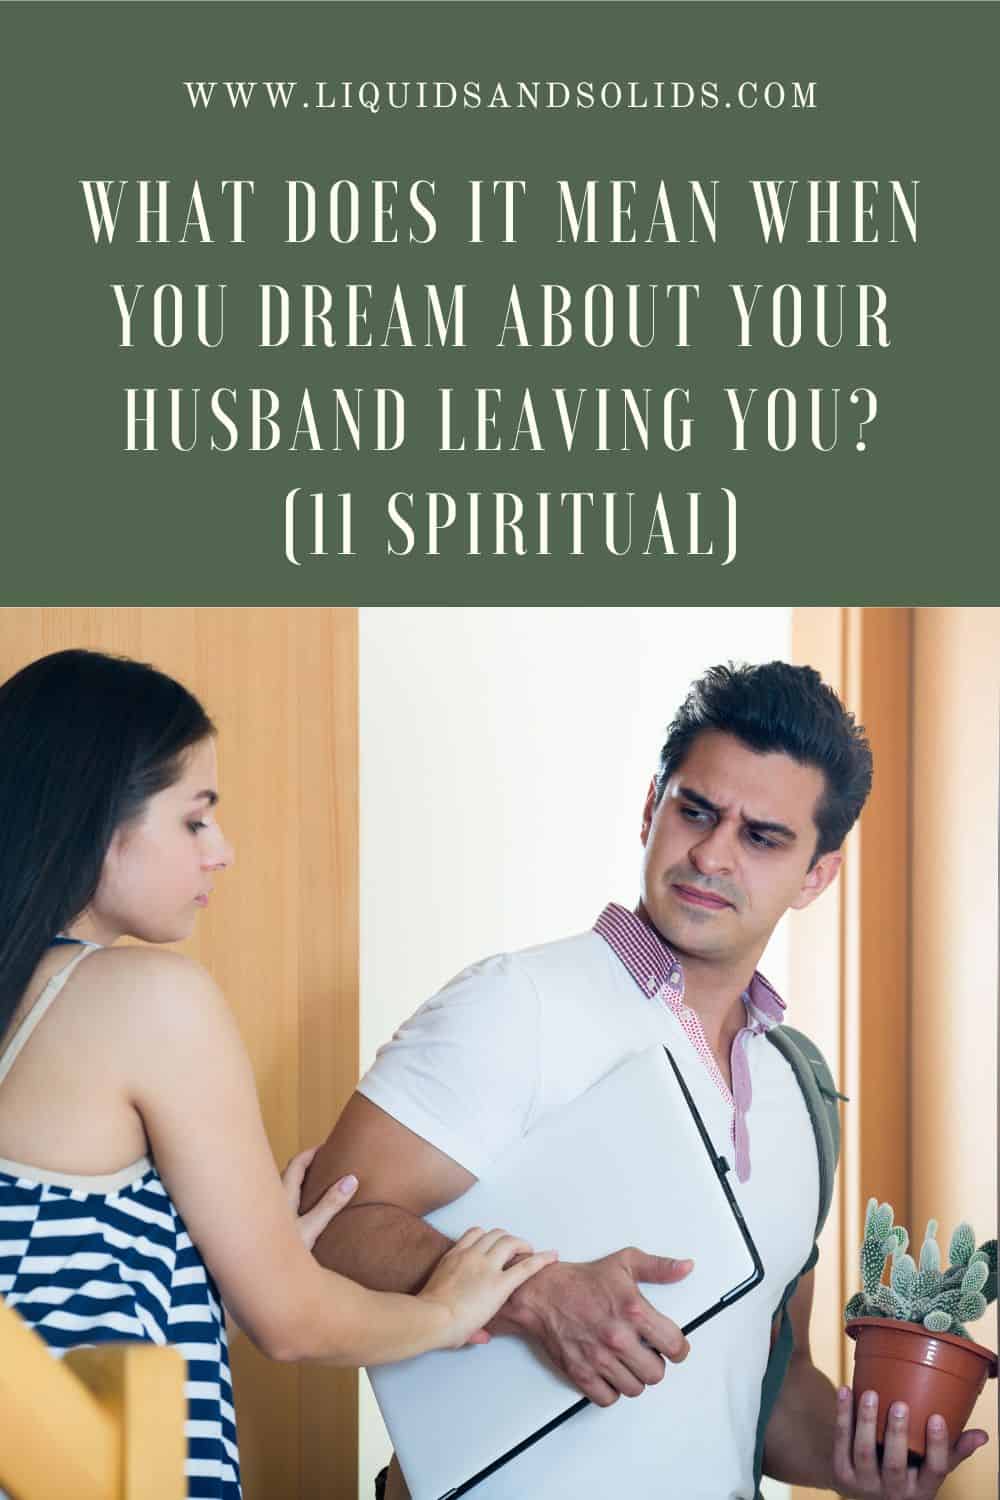  Álom a férjedről, aki elhagy téged? (11 spirituális jelentés)